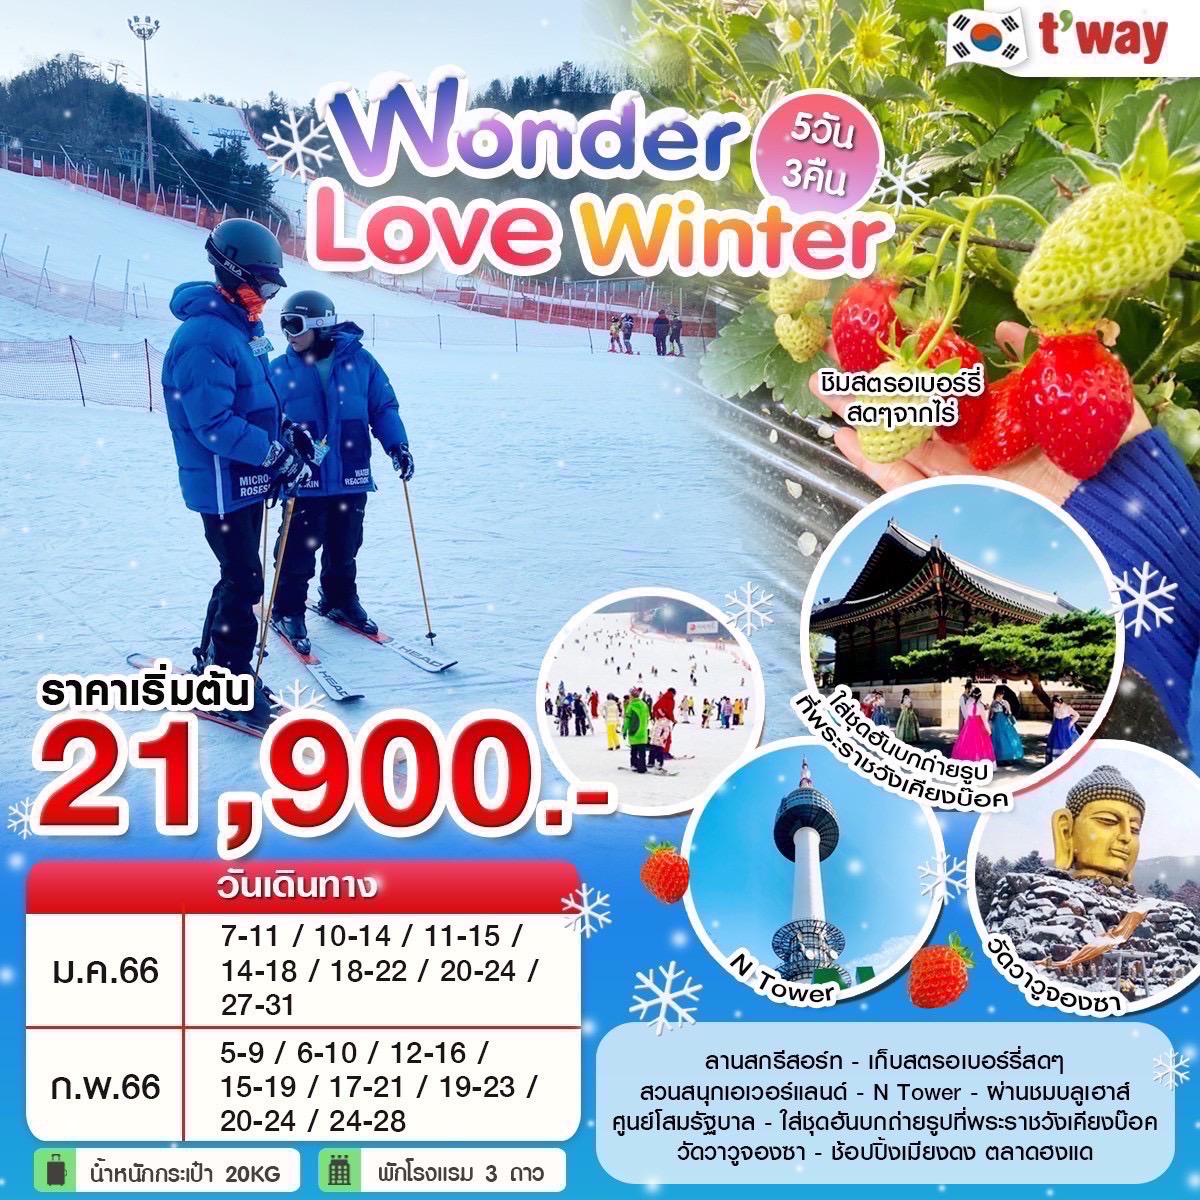 ทัวร์เกาหลีใต้ Wonder Winter Ski 5วัน 3คืน (TW) ม.ค.-ก.พ. 66